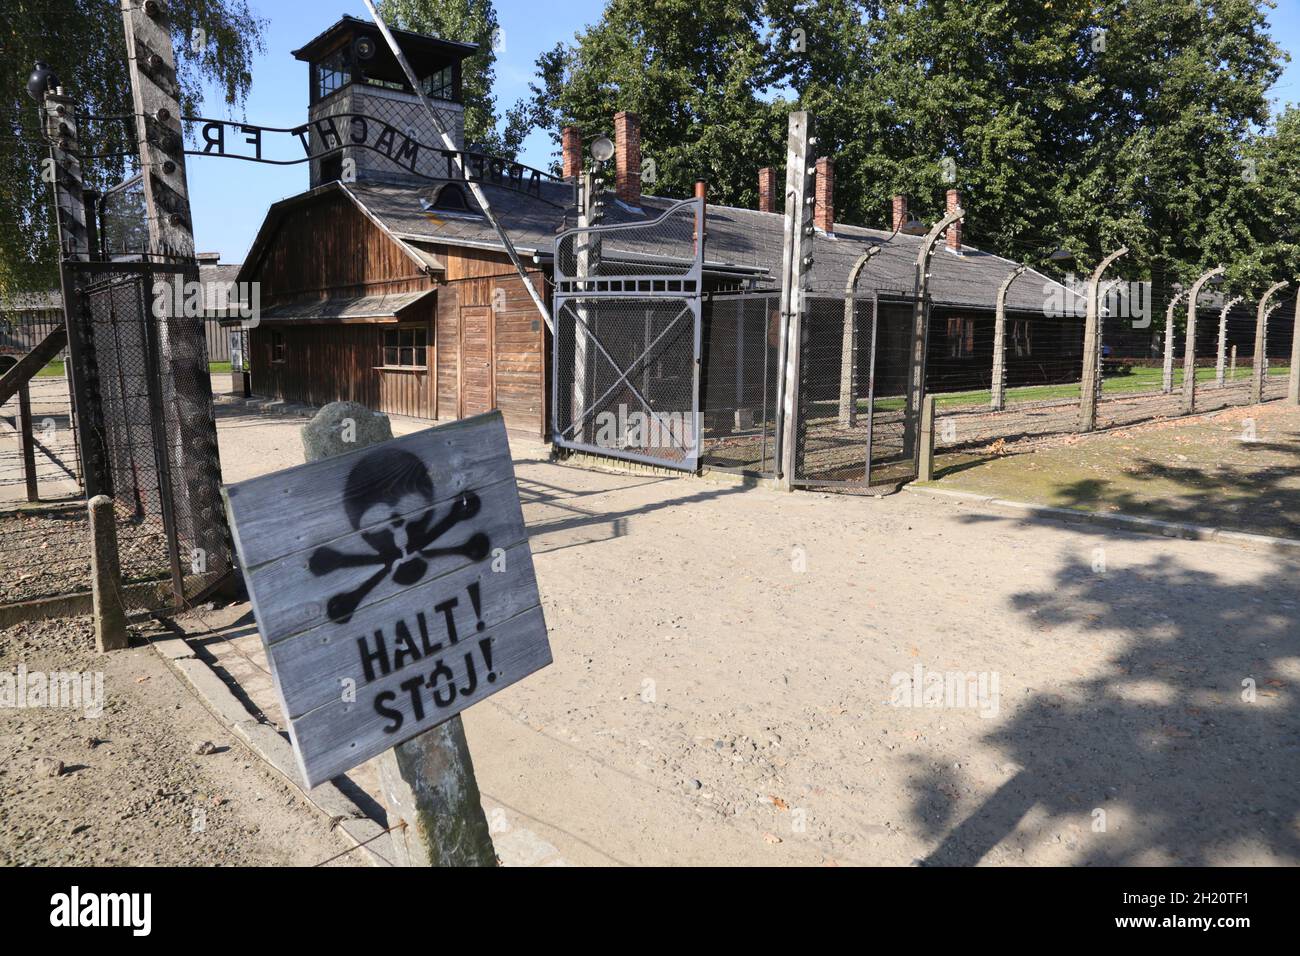 Oswiecim. Poland. Memorial and museum Auschwitz-Birkenau, former Auschwitz Nazi death camp in Oswiecim, Poland. The 'Arbeit macht frei' gate. Stock Photo